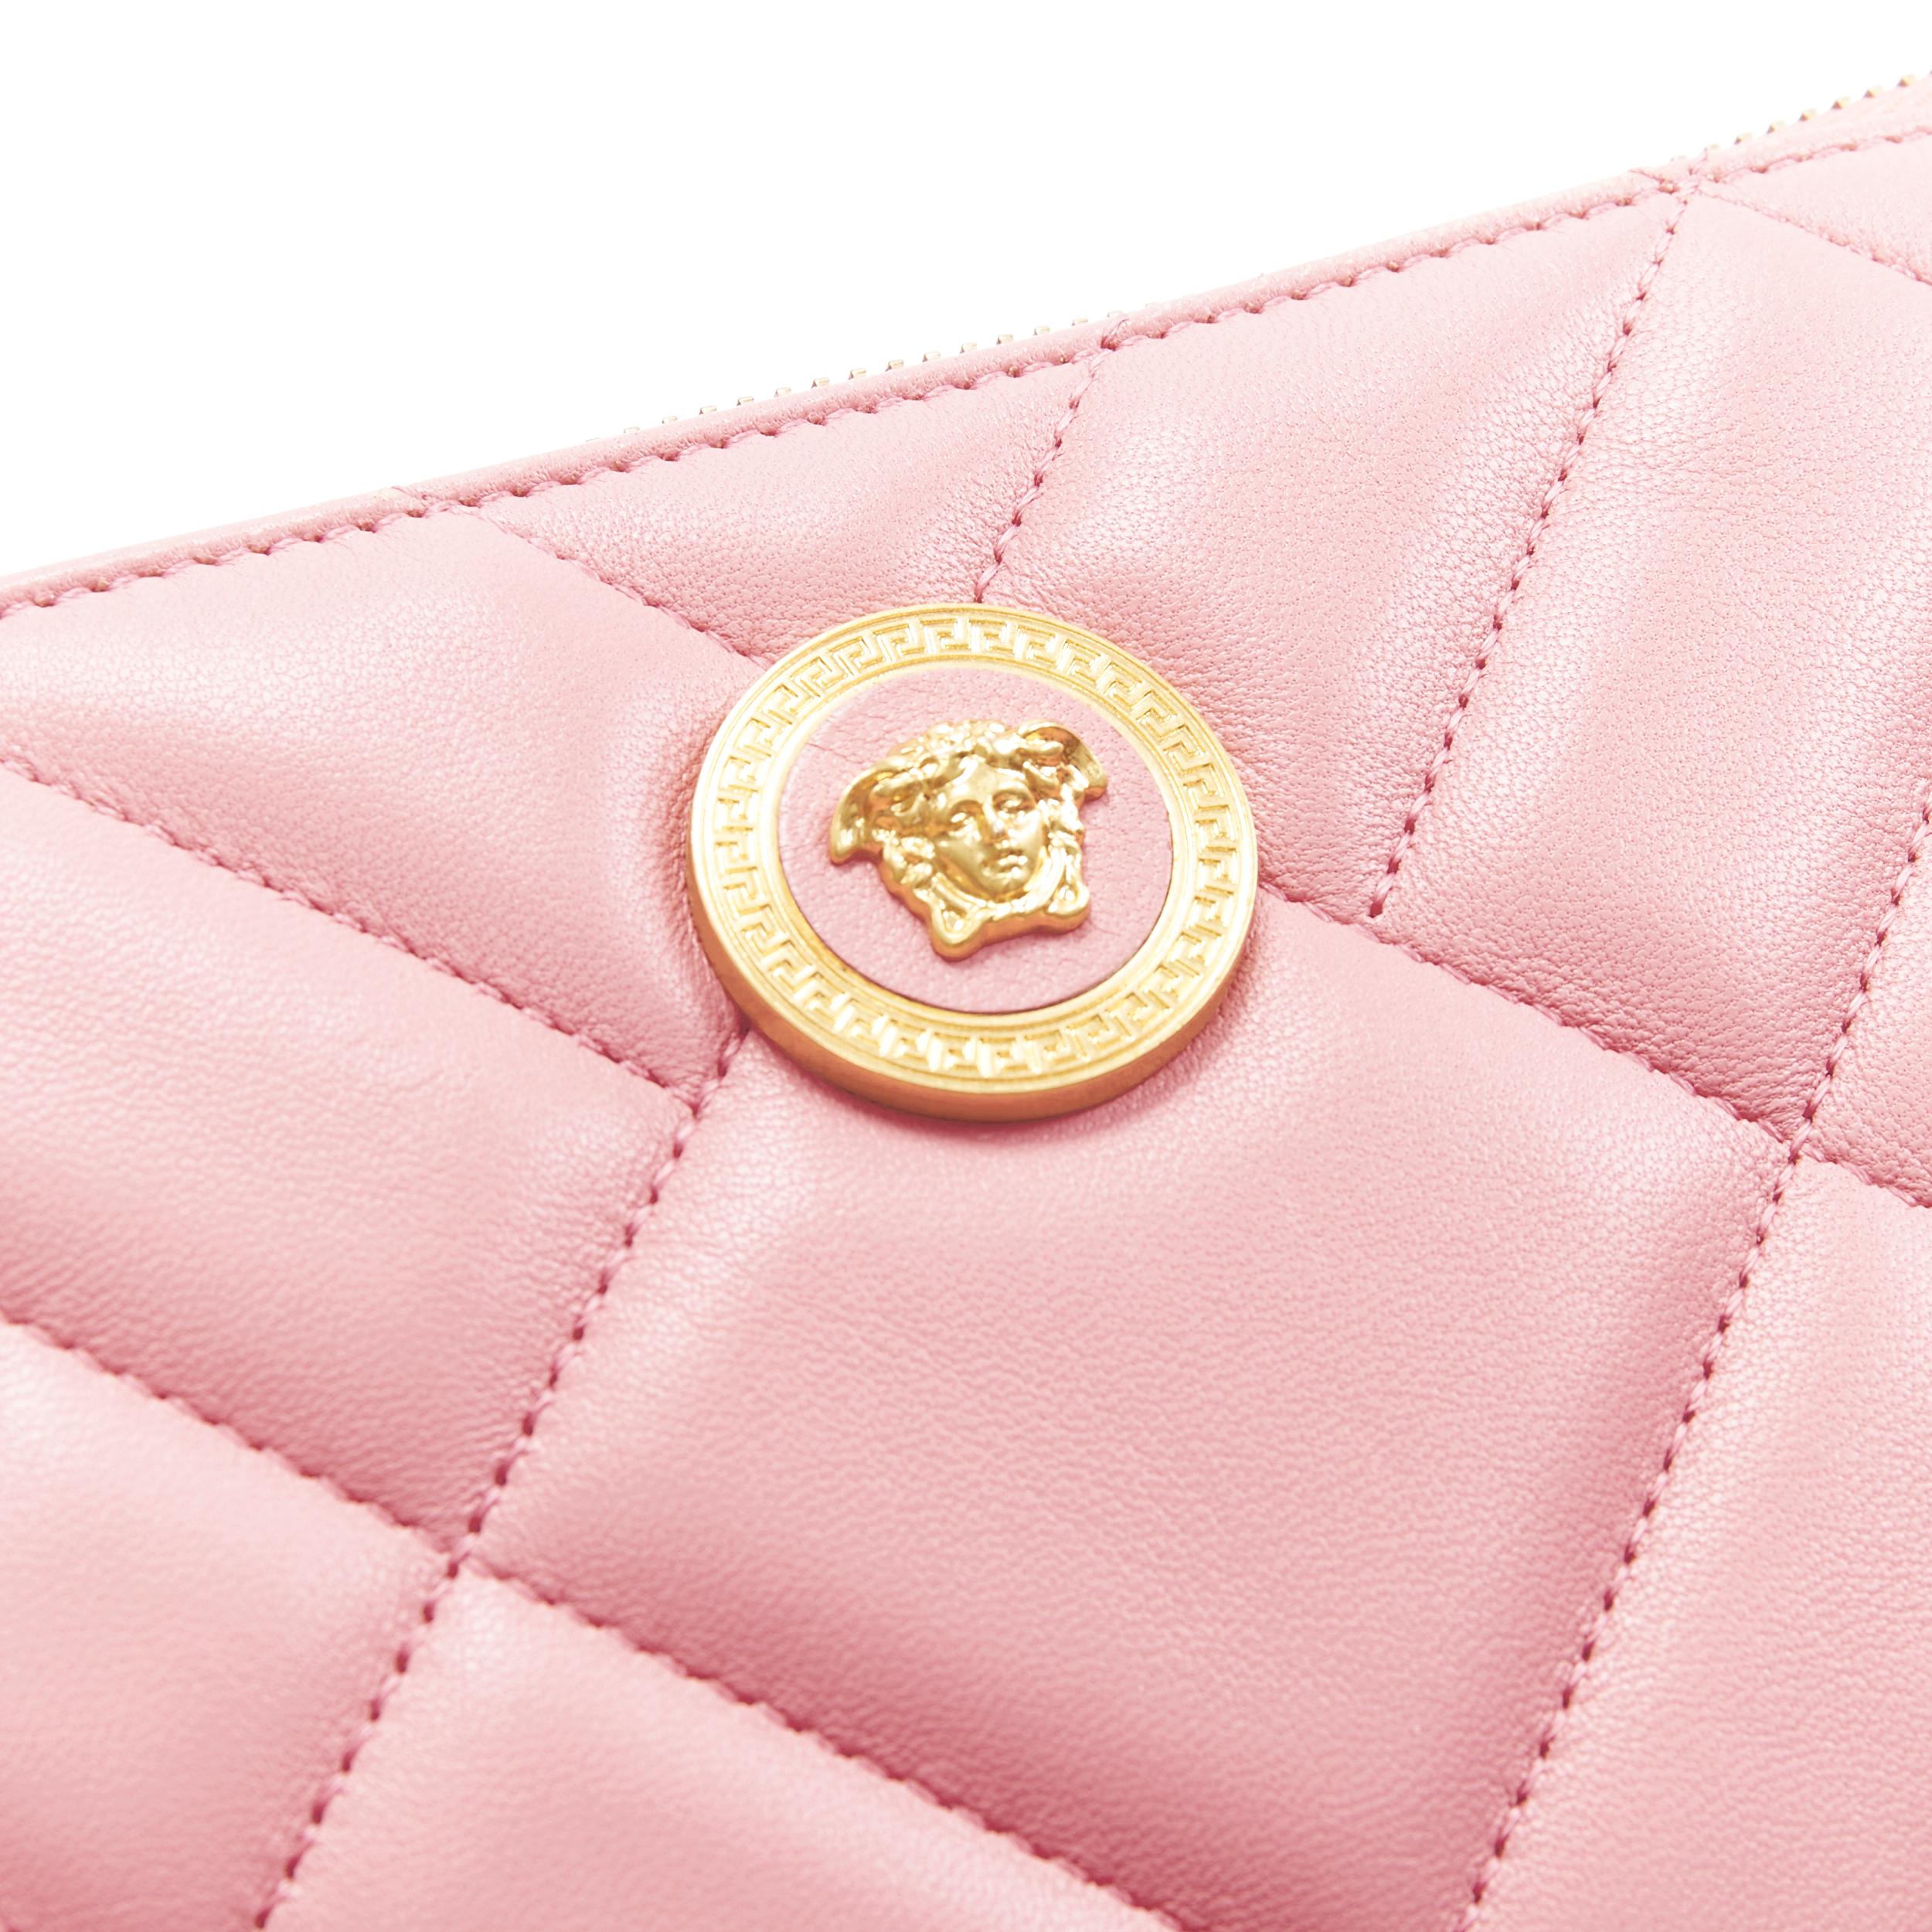 Women's new VERSACE diamond quilted gold Medusa emblem zip wristlet flat clutch bag